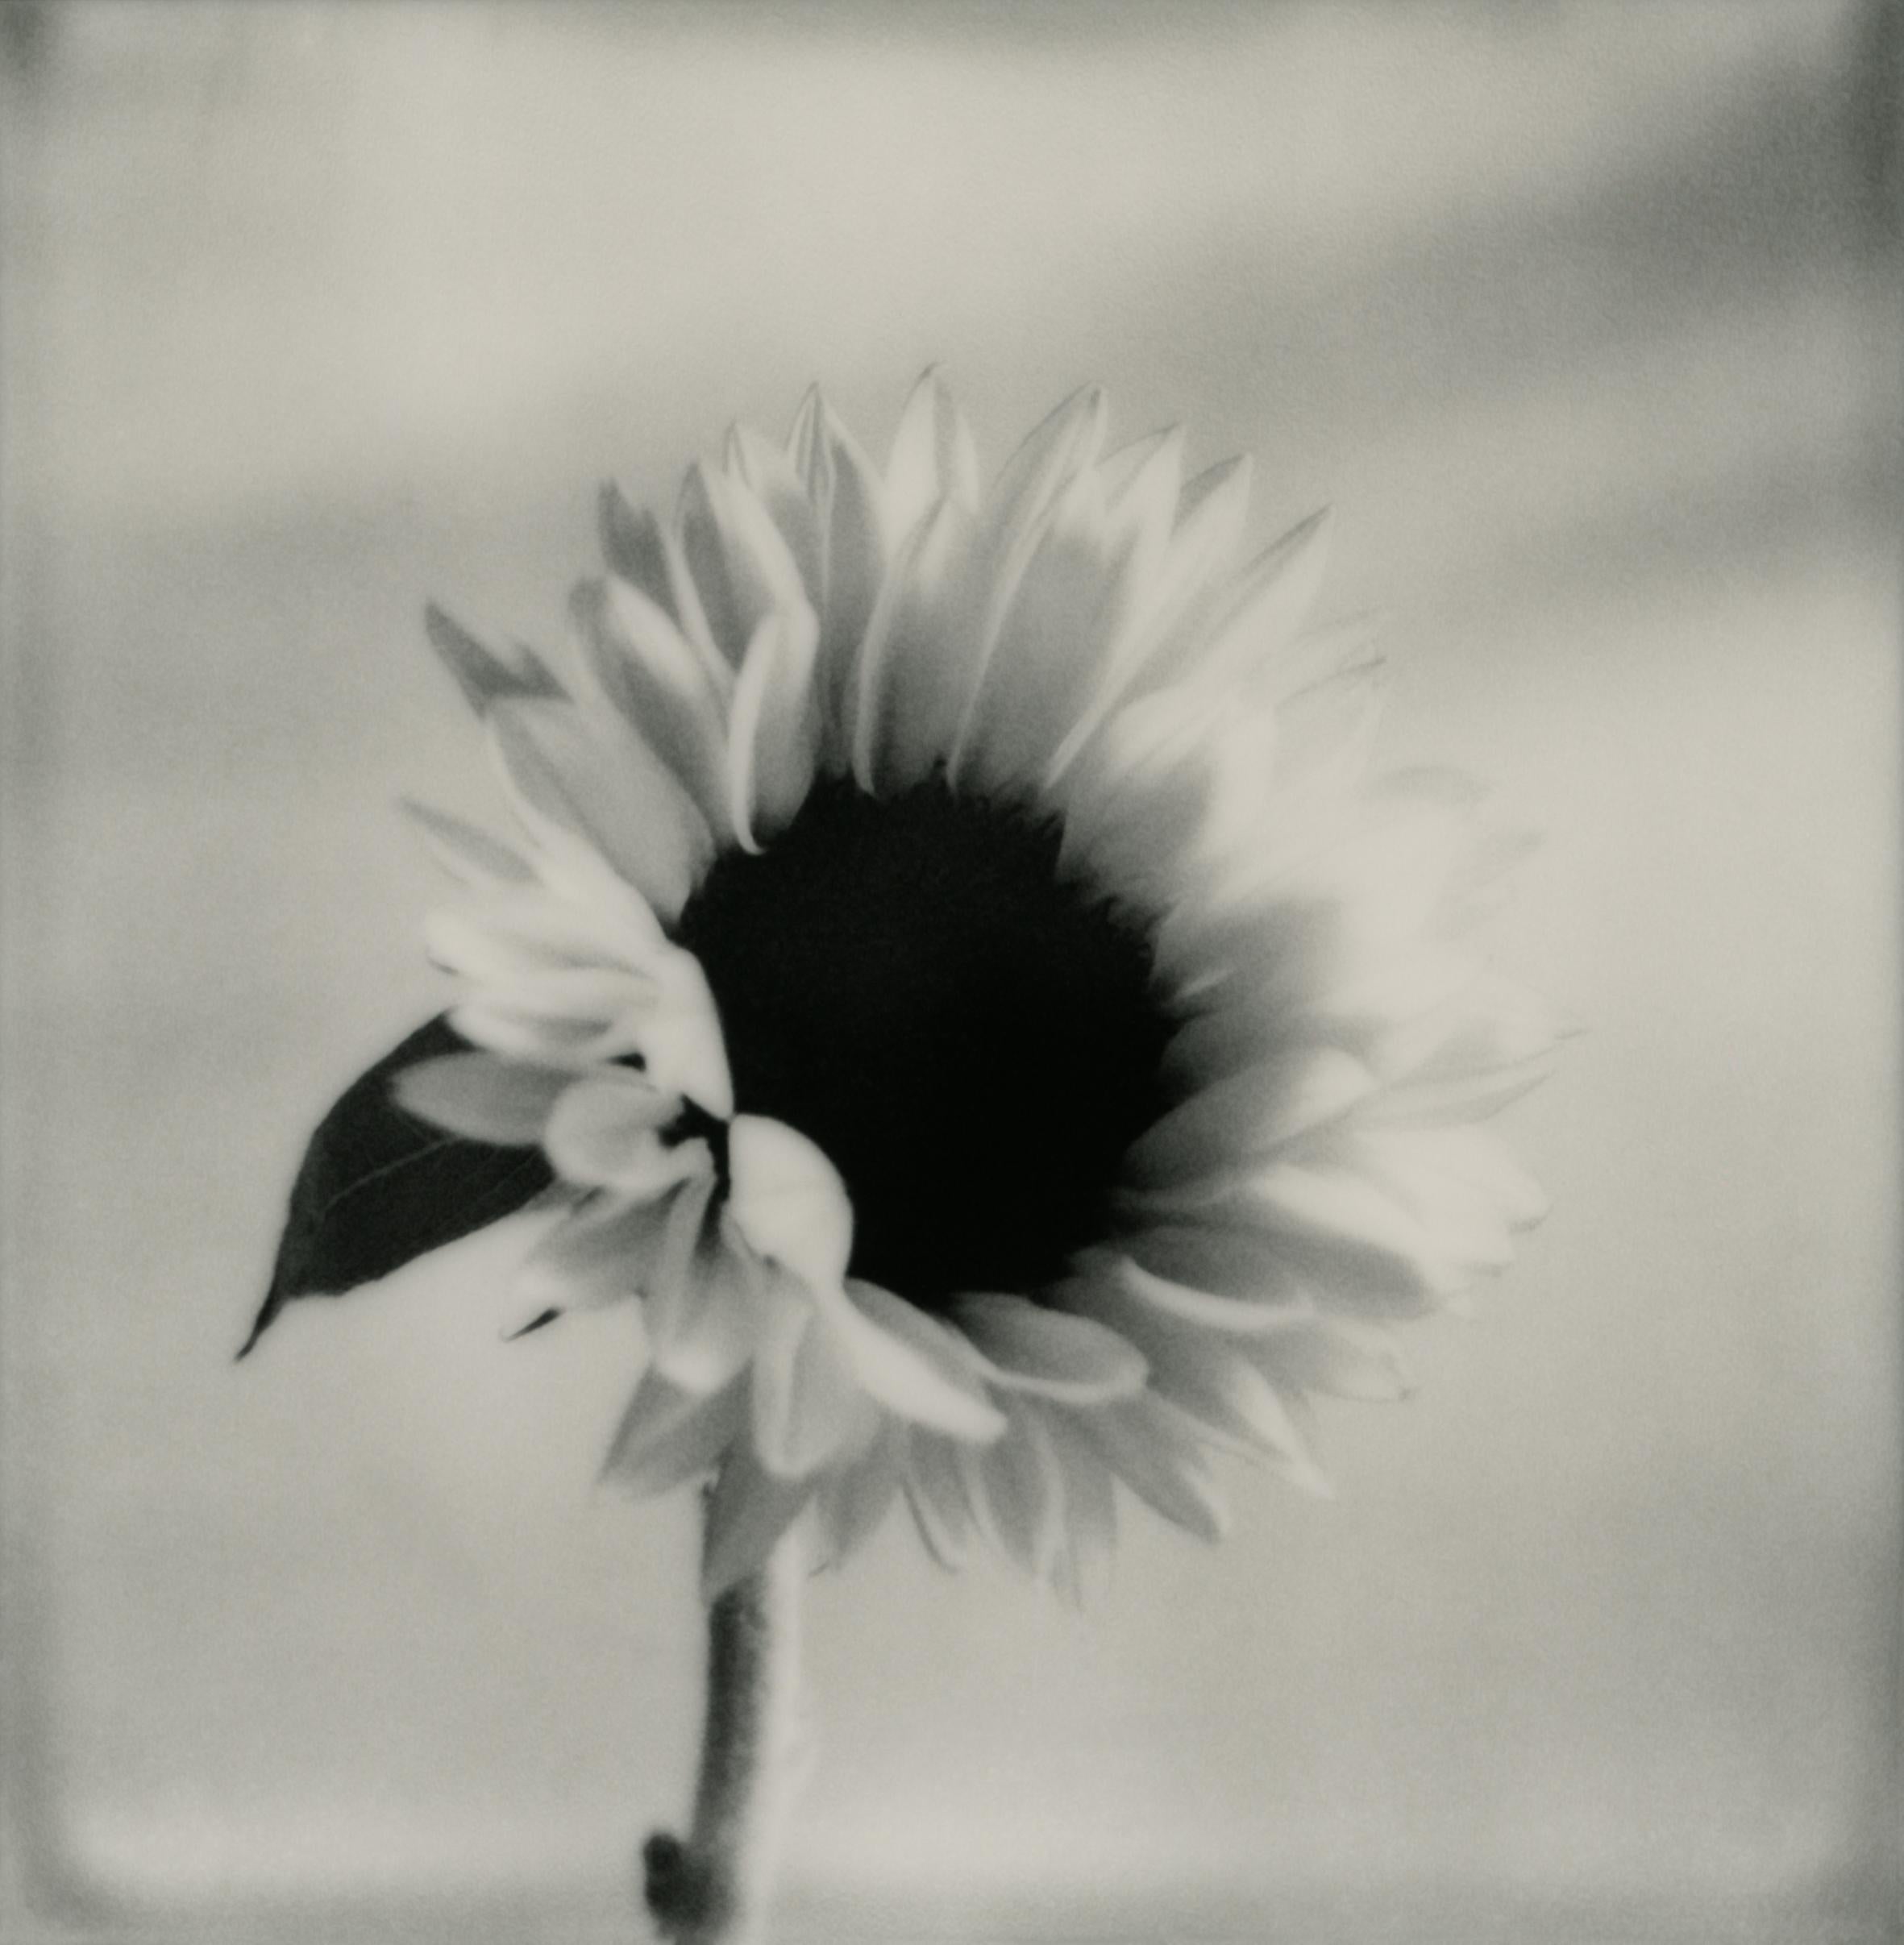 Ugne Pouwell Black and White Photograph – Sonnenblume Nr.2 – Polaroid-Schwarz-Weiß-Blumenfotografie in Schwarz-Weiß, limitierte Auflage 20